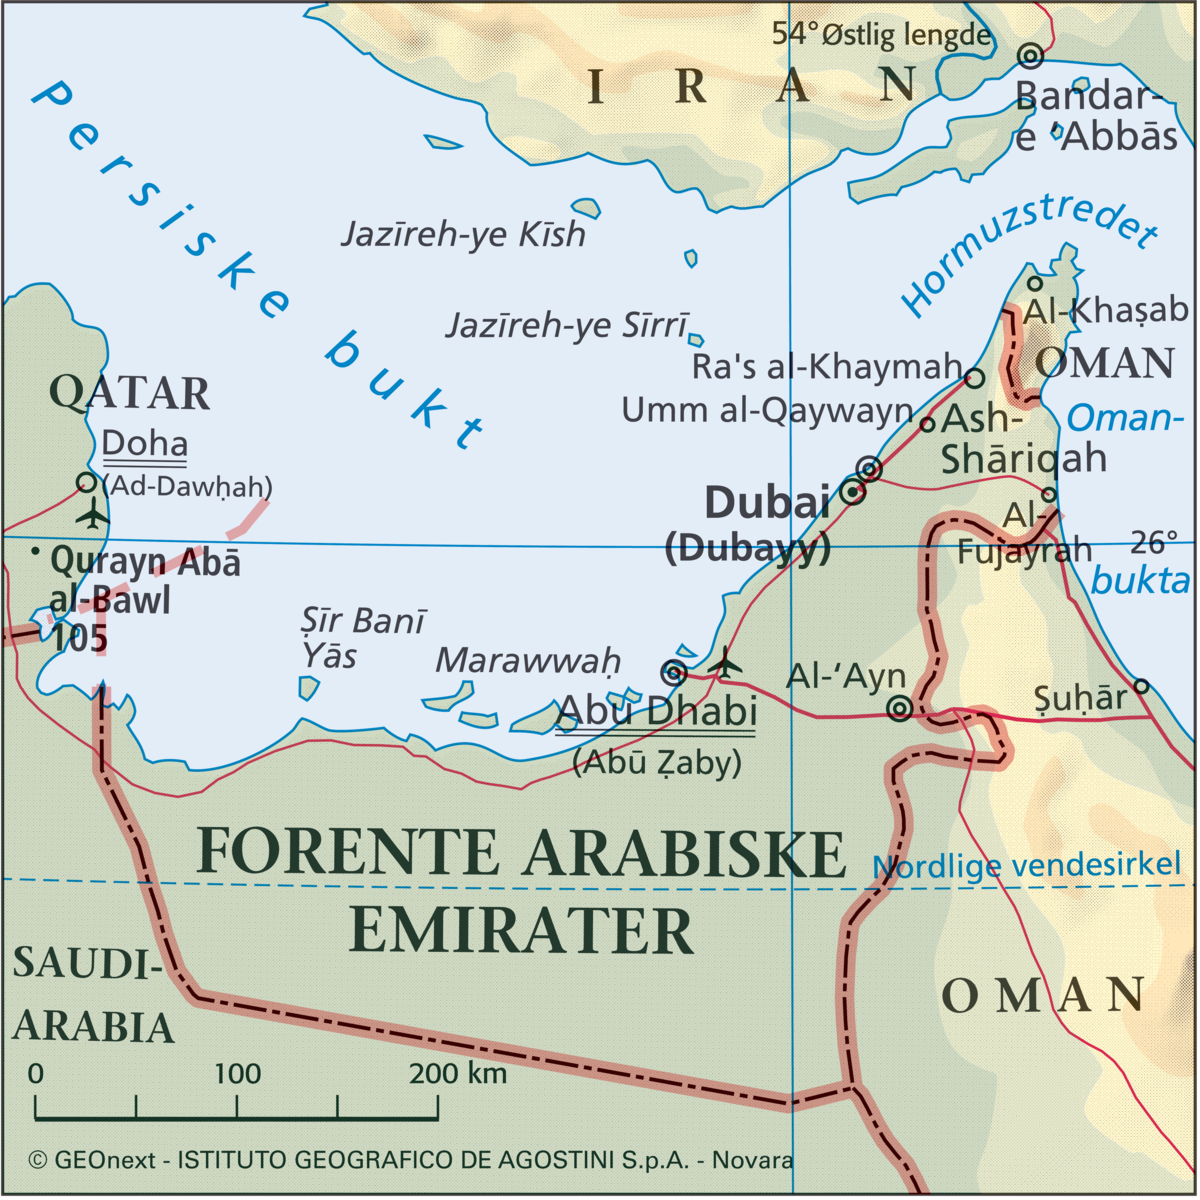 Forente Arabiske emirater